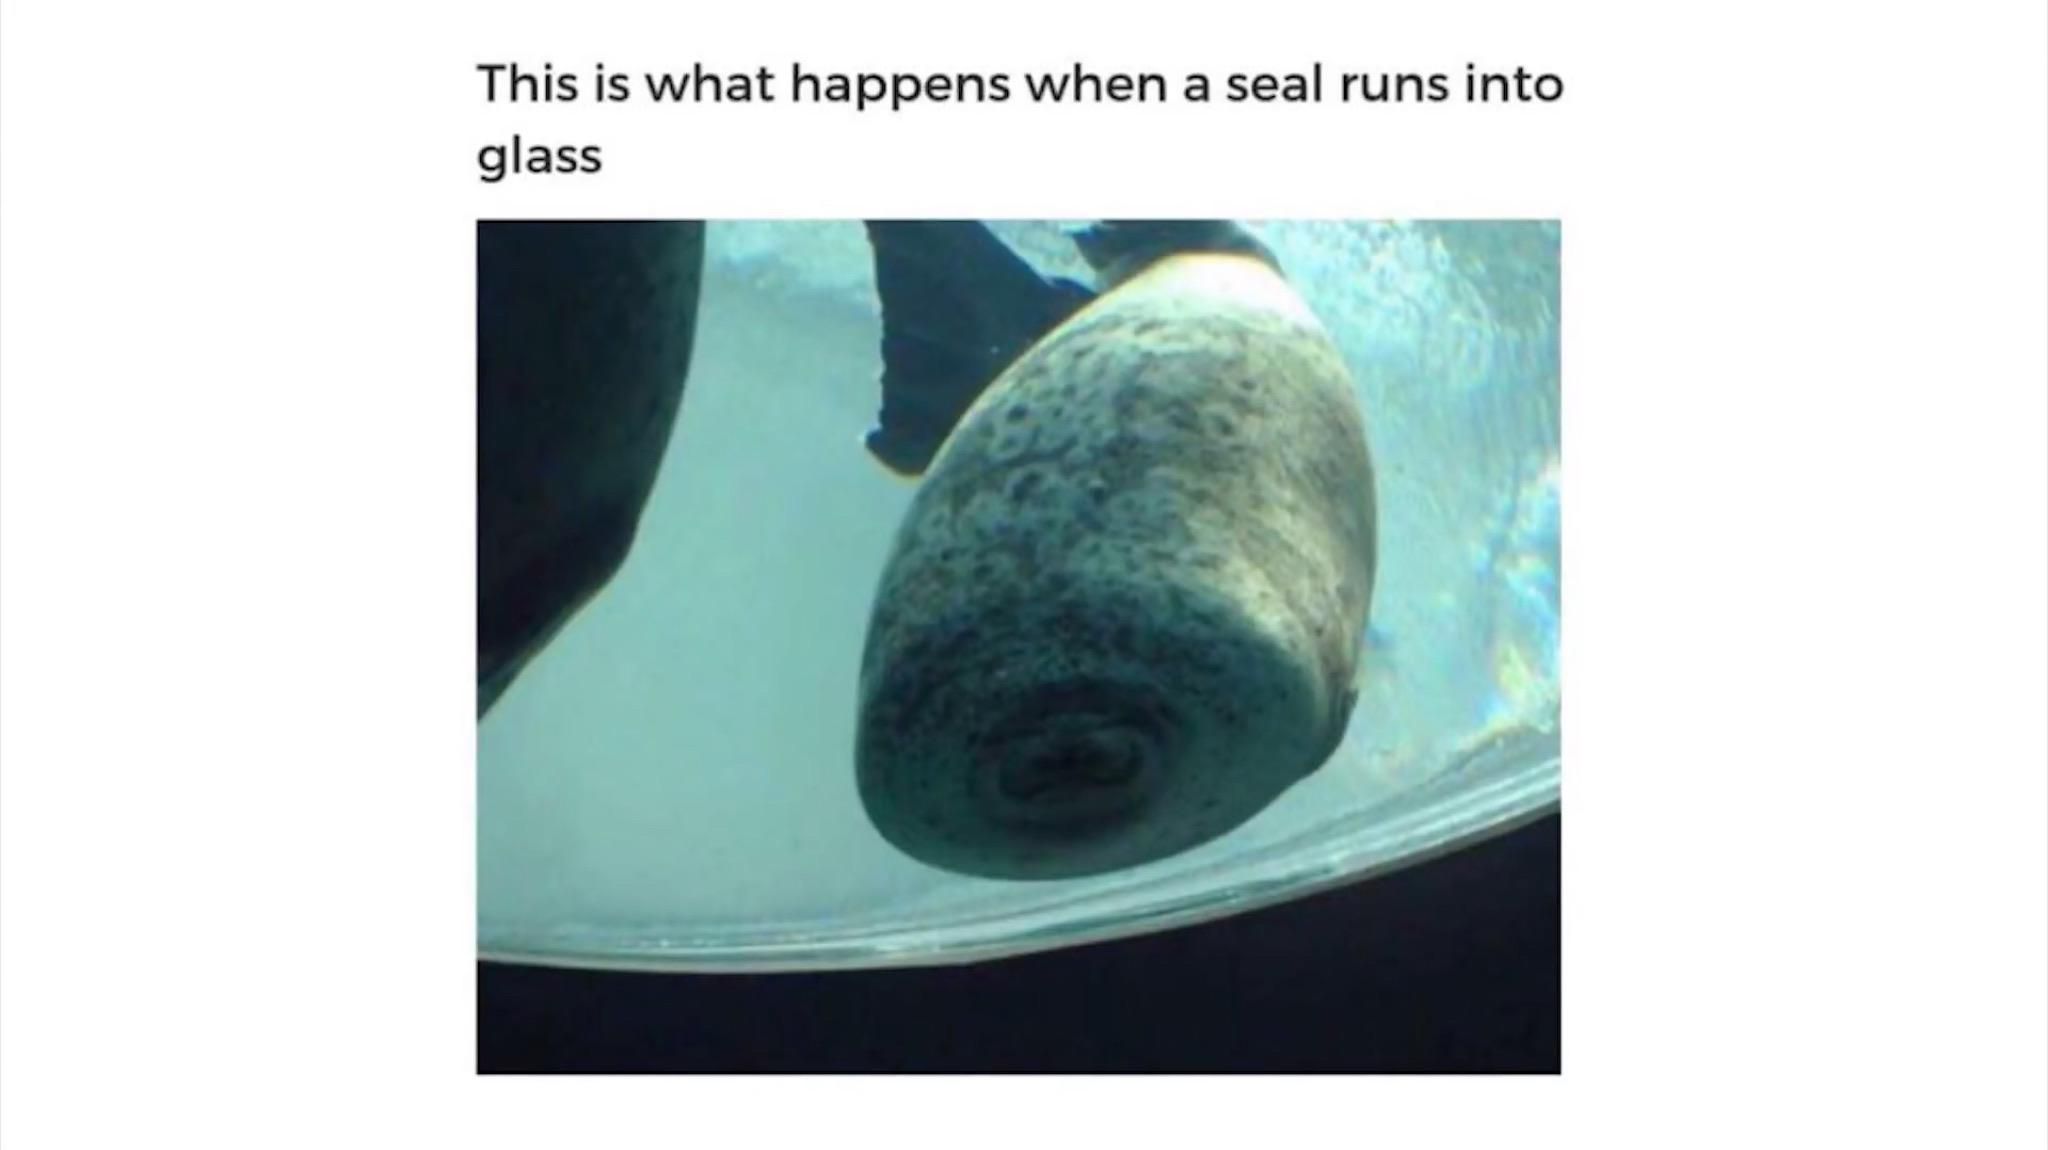 Seals are cute